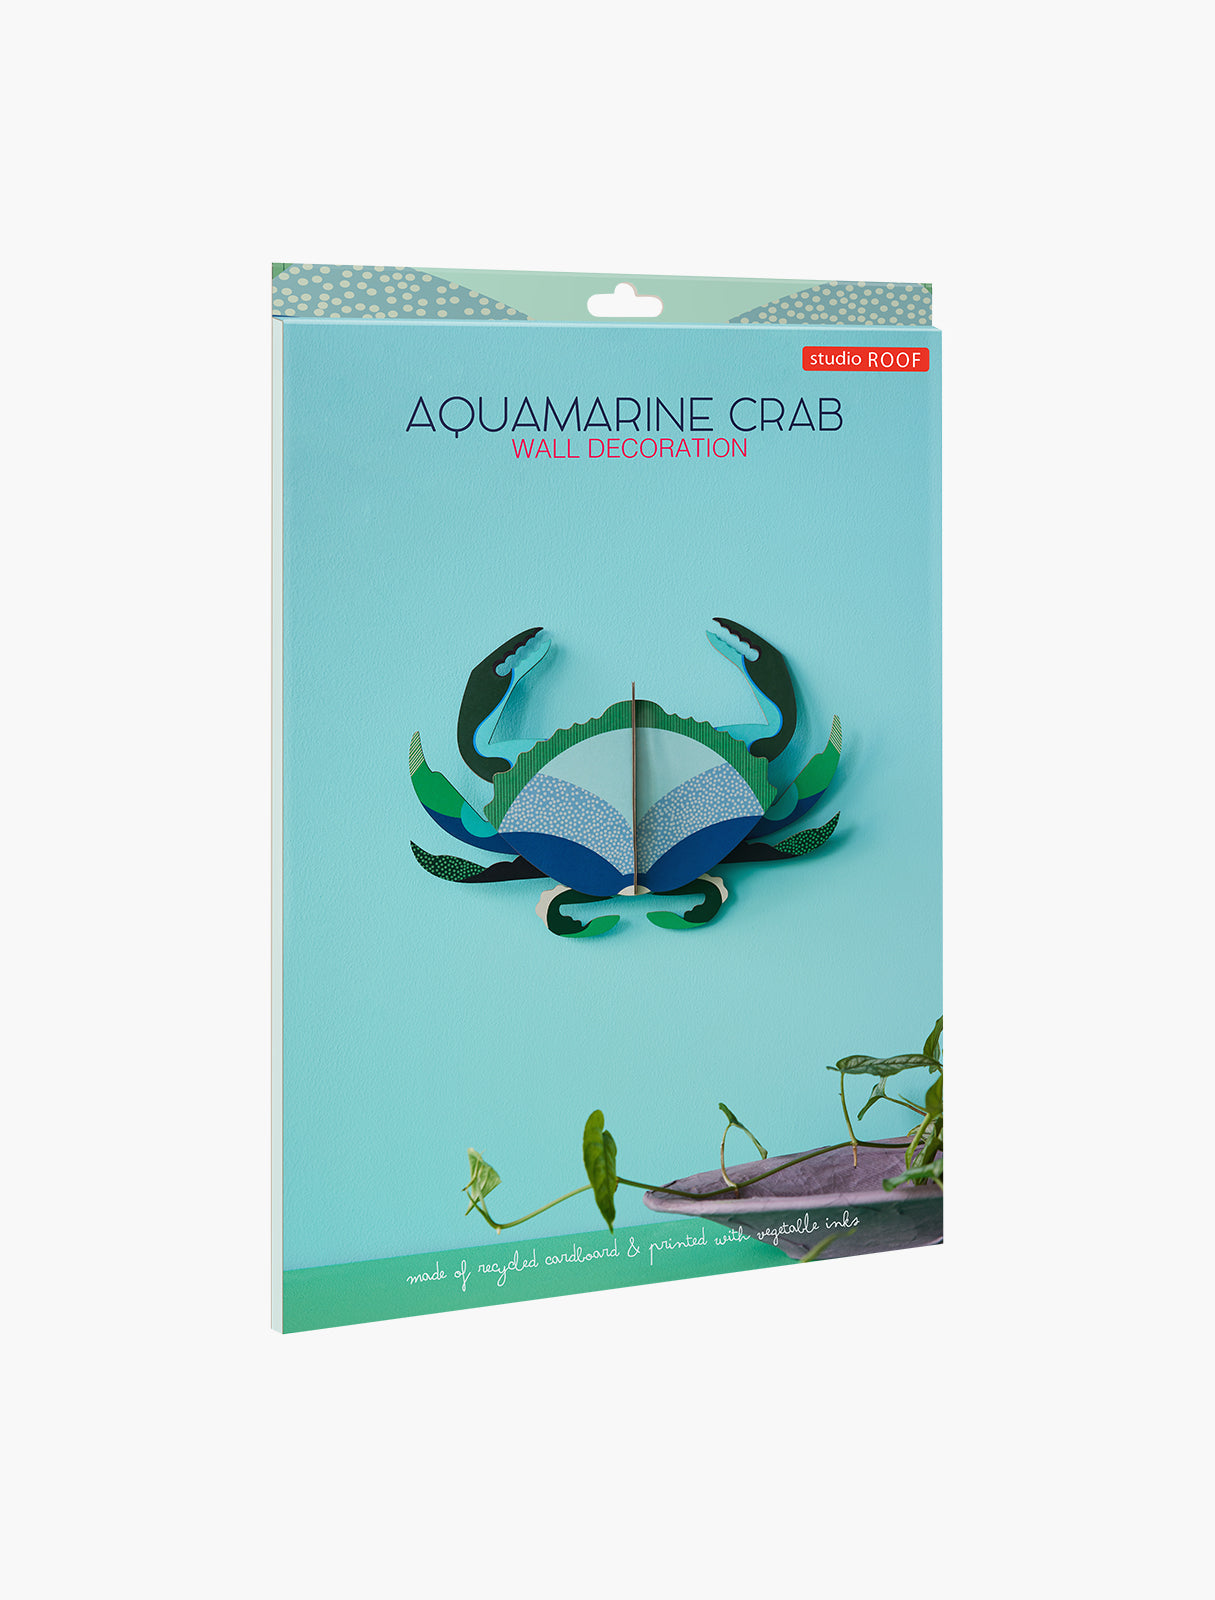 Aquamarine Crab - Studio Roof